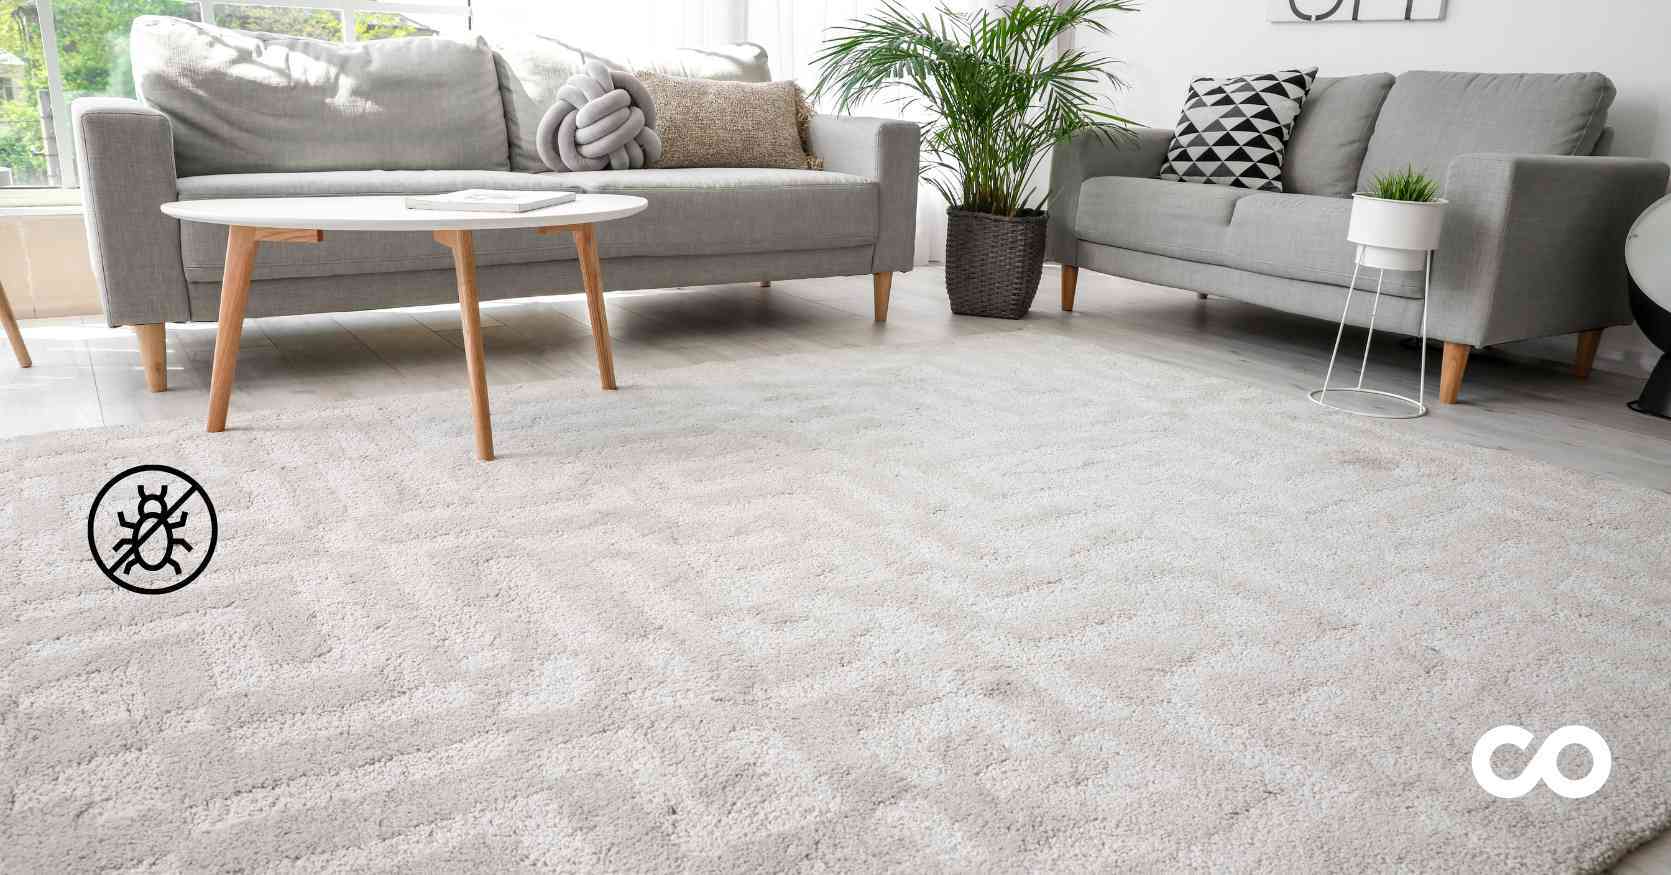 anti-dust-mite carpet